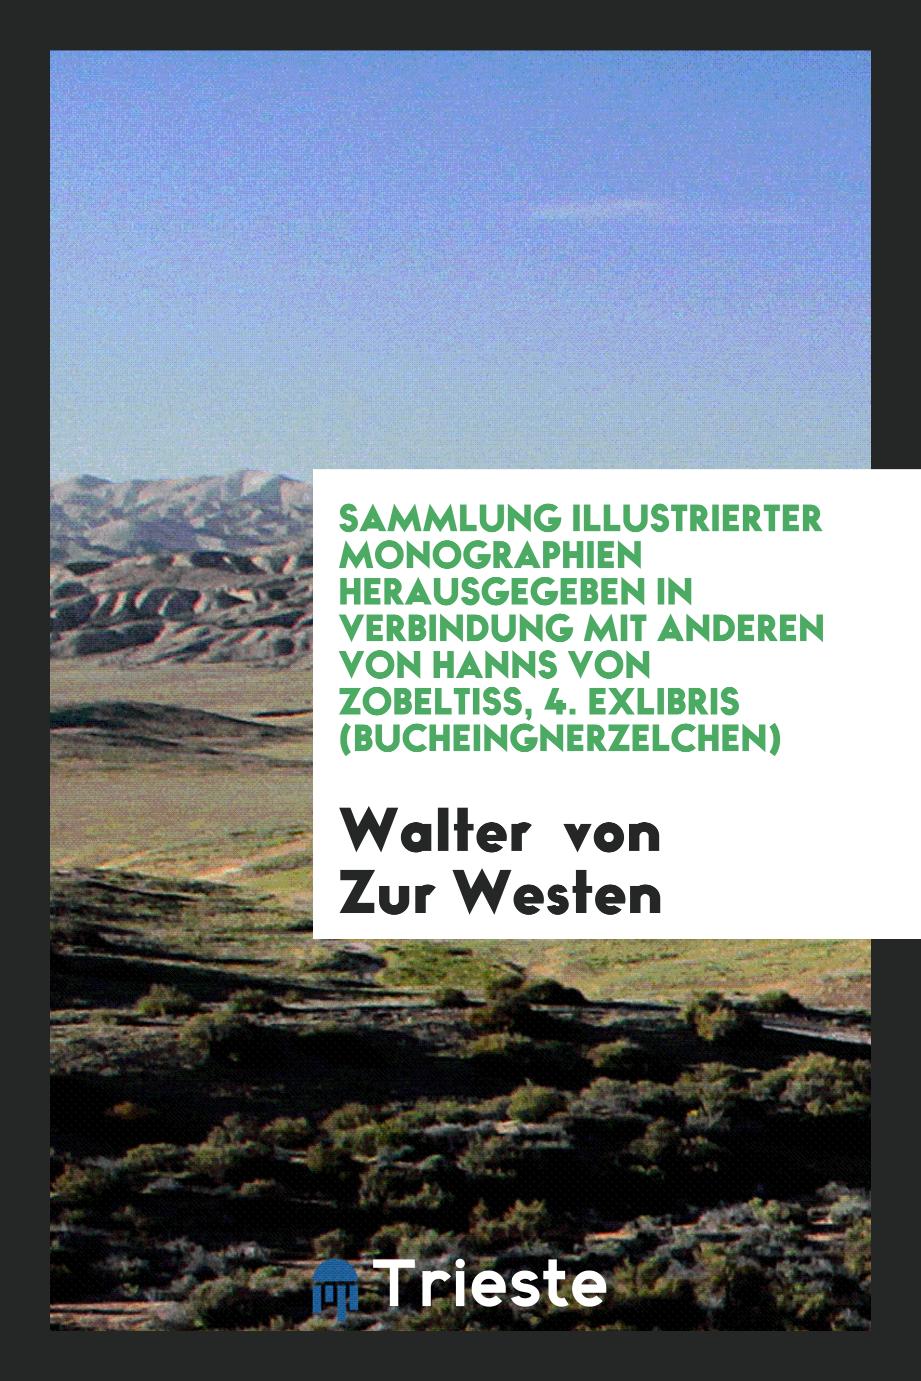 Sammlung Illustrierter Monographien Herausgegeben in Verbindung mit Anderen von Hanns von Zobeltiss, 4. Exlibris (Bucheingnerzelchen)